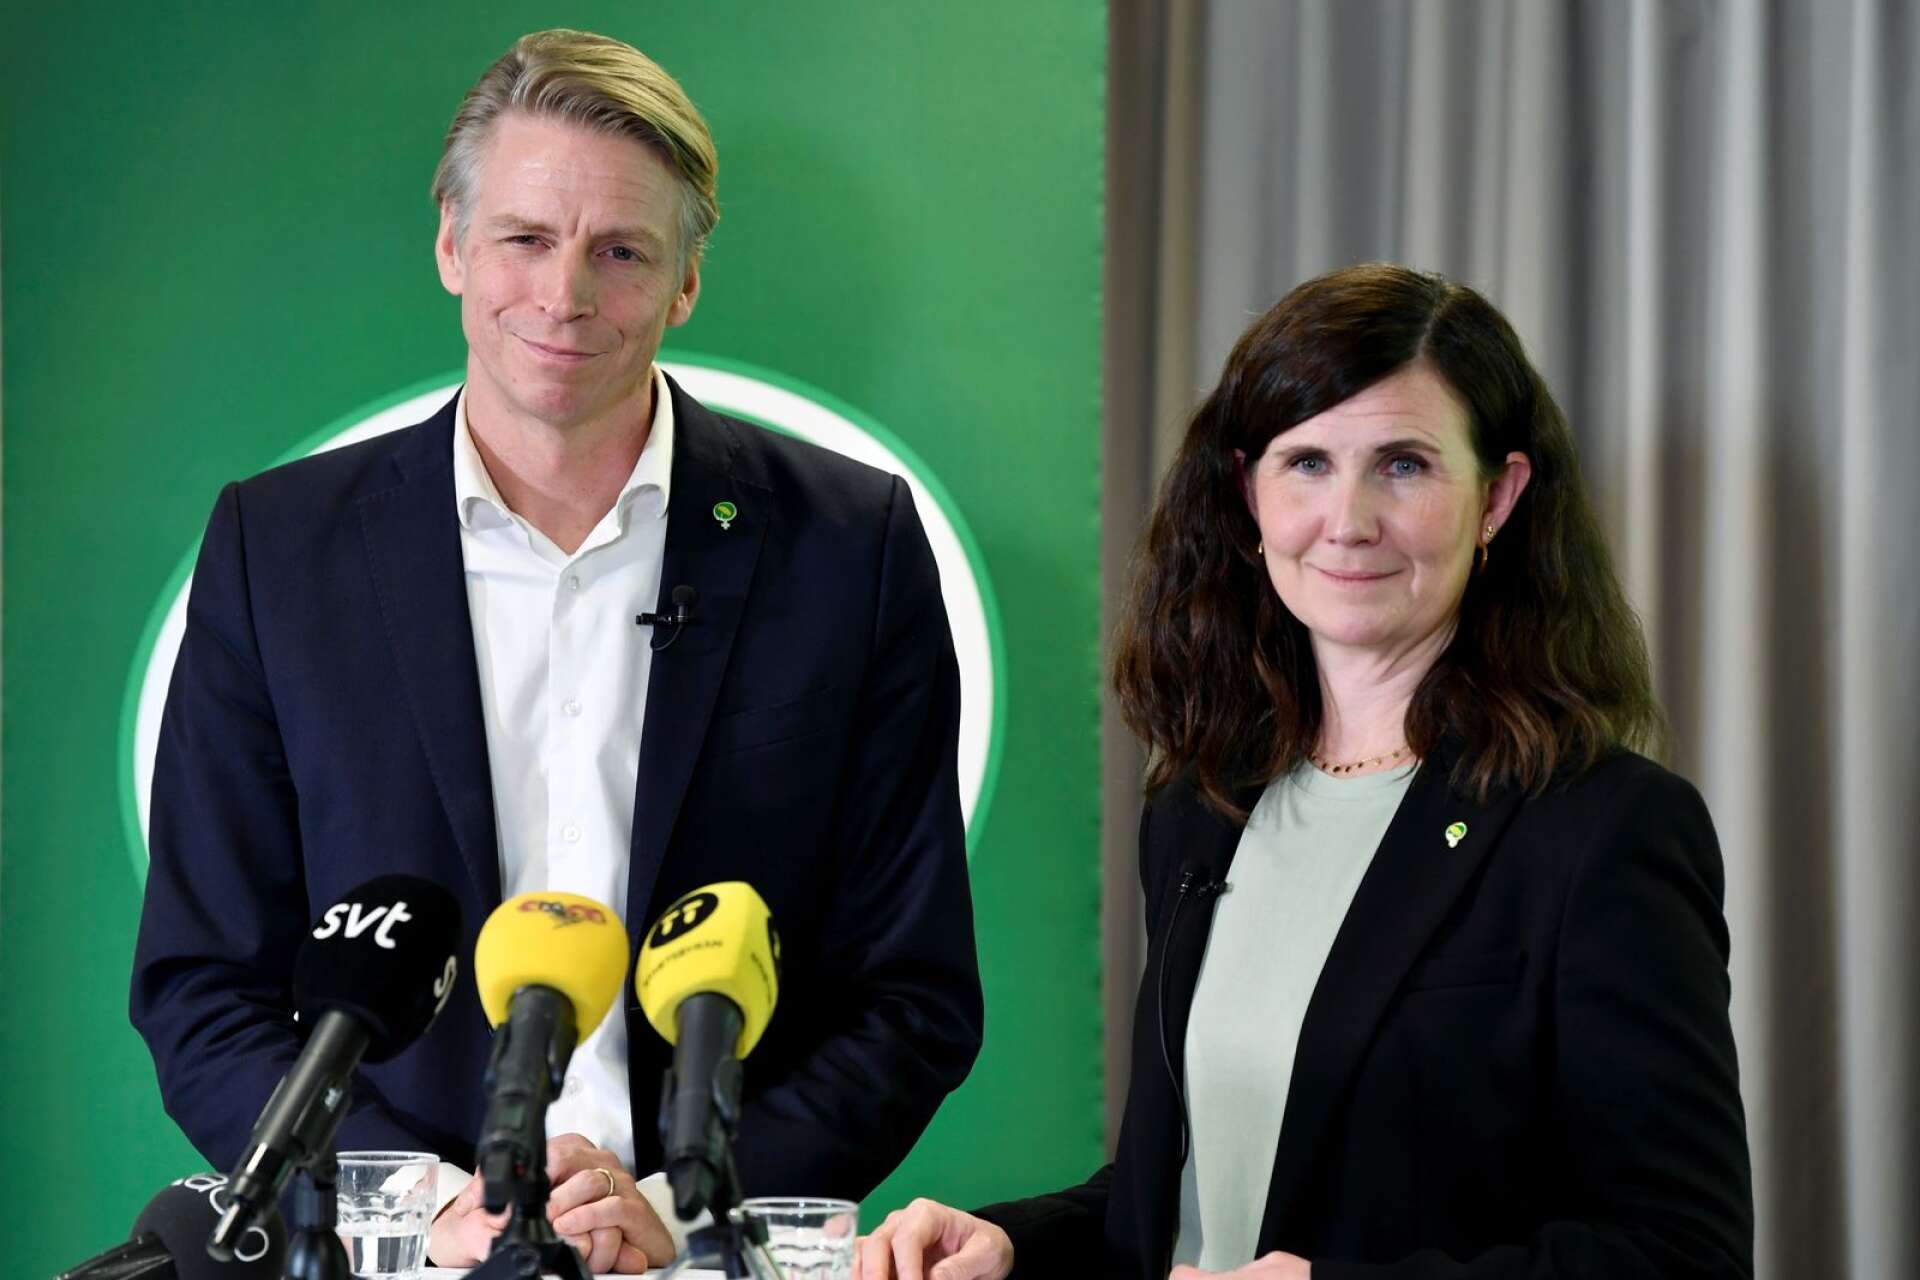 I helgen samlas Miljöpartiet i Karlstad för valupptakt. Vad är språkrören Per Bolund och Märta Stenevis strategi för att inte partiet ska ramla ur riksdagen i höst?